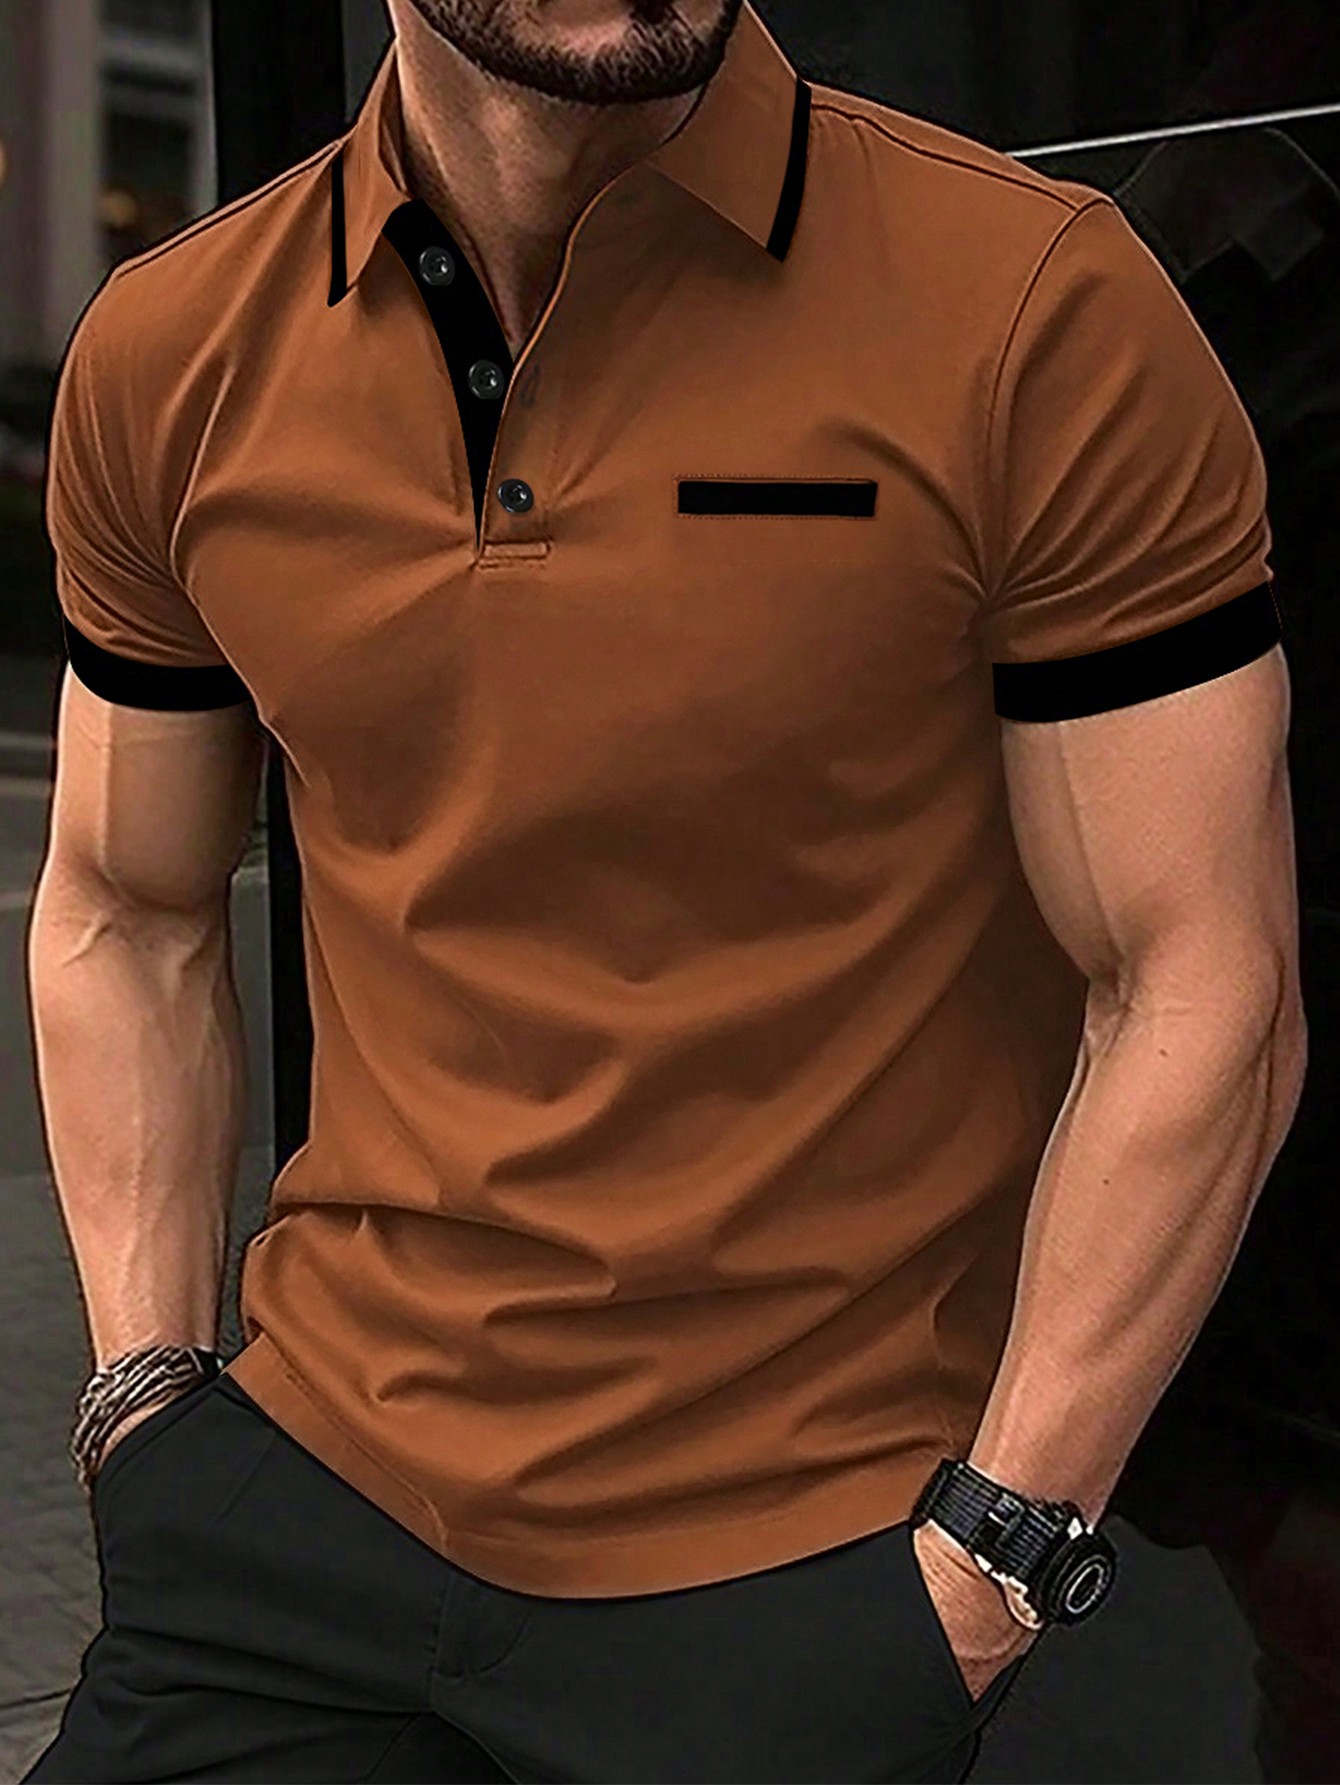 Мужская рубашка-поло контрастного цвета Manfinity Homme, коричневый мужская рубашка поло контрастного цвета manfinity homme черный